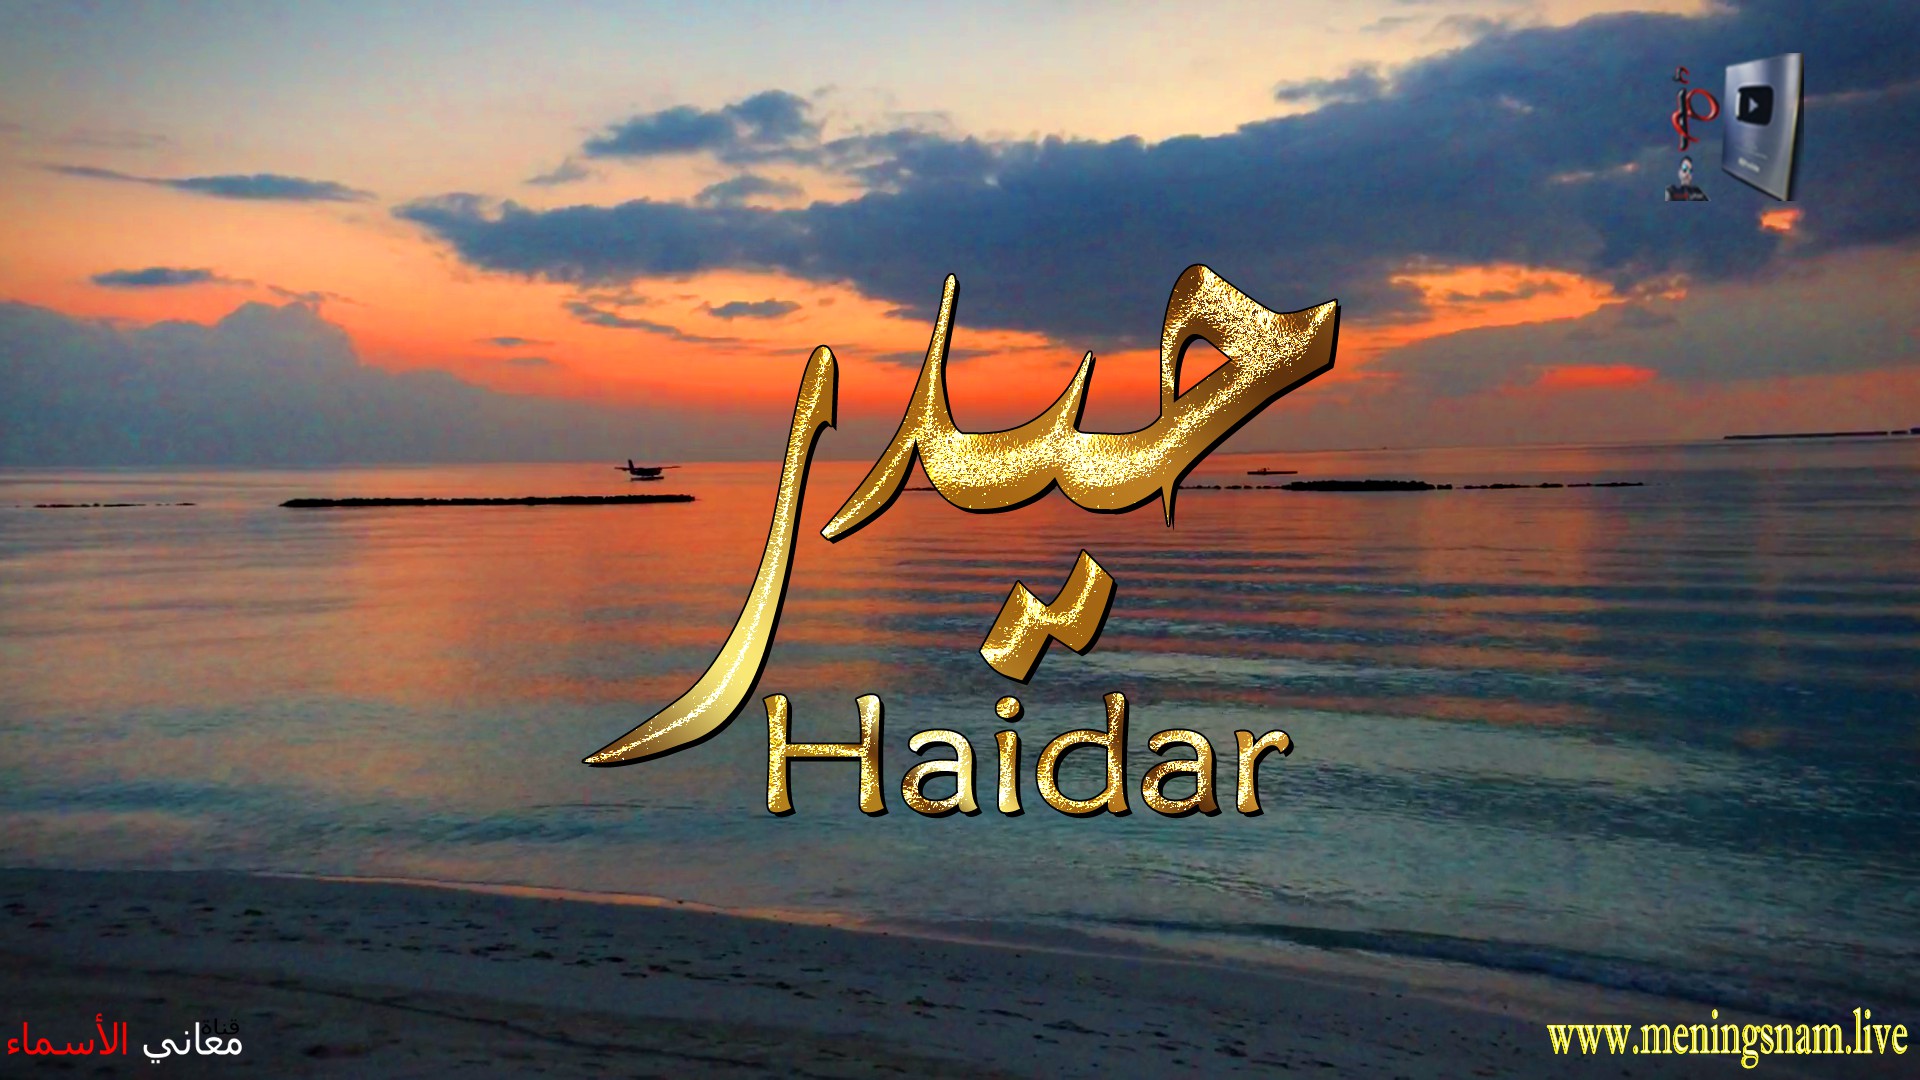 معنى اسم, حيدر, وصفات, حامل, هذا الاسم, Haidar,